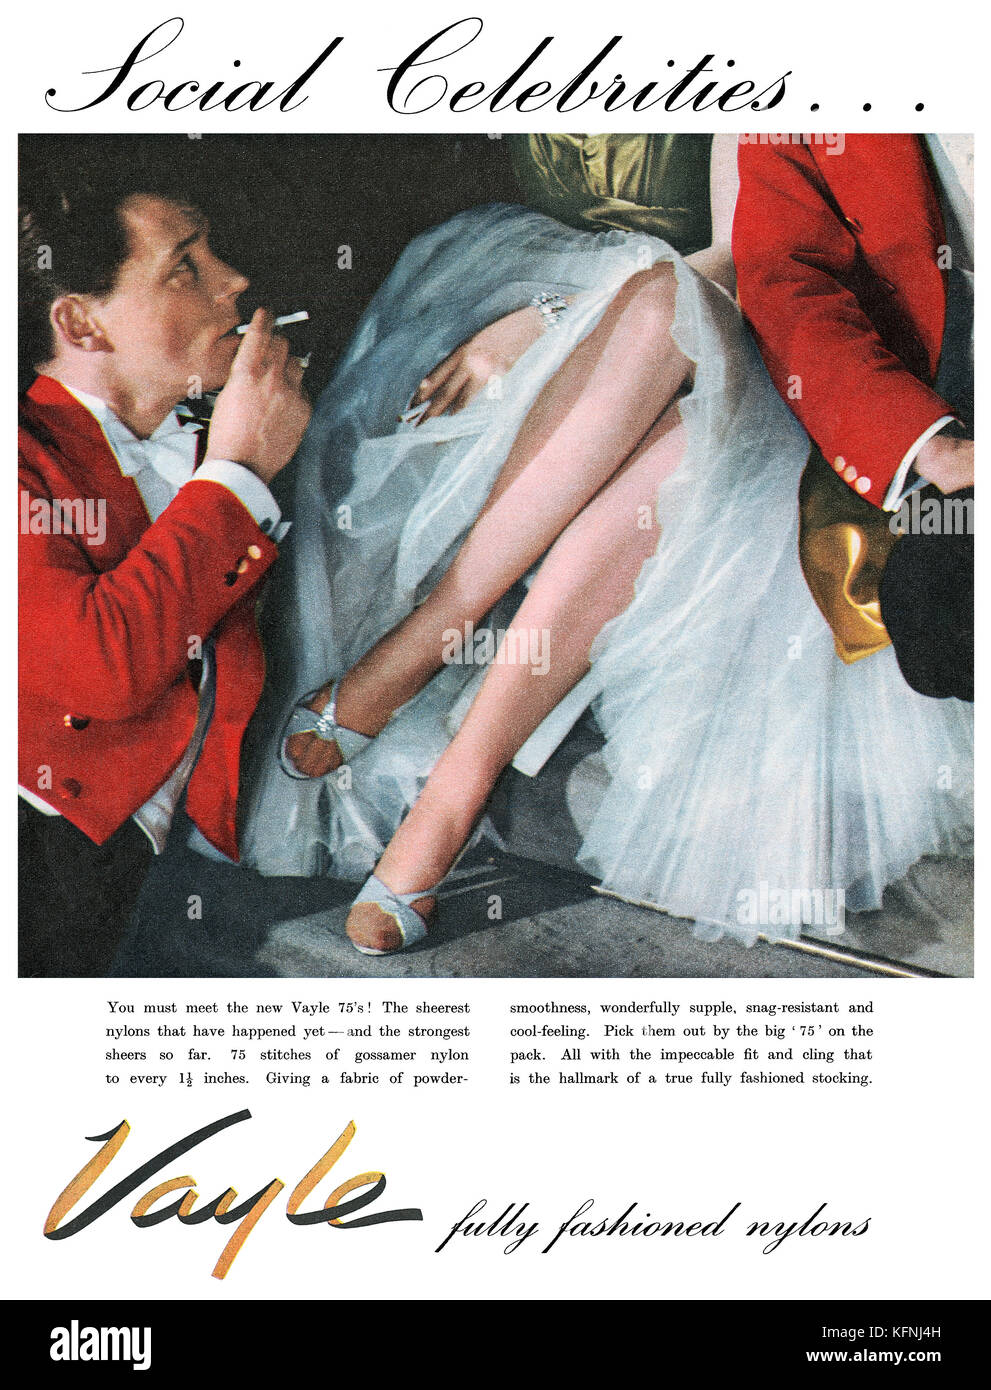 Nylon stockings advertisement Banque de photographies et d'images à haute  résolution - Alamy